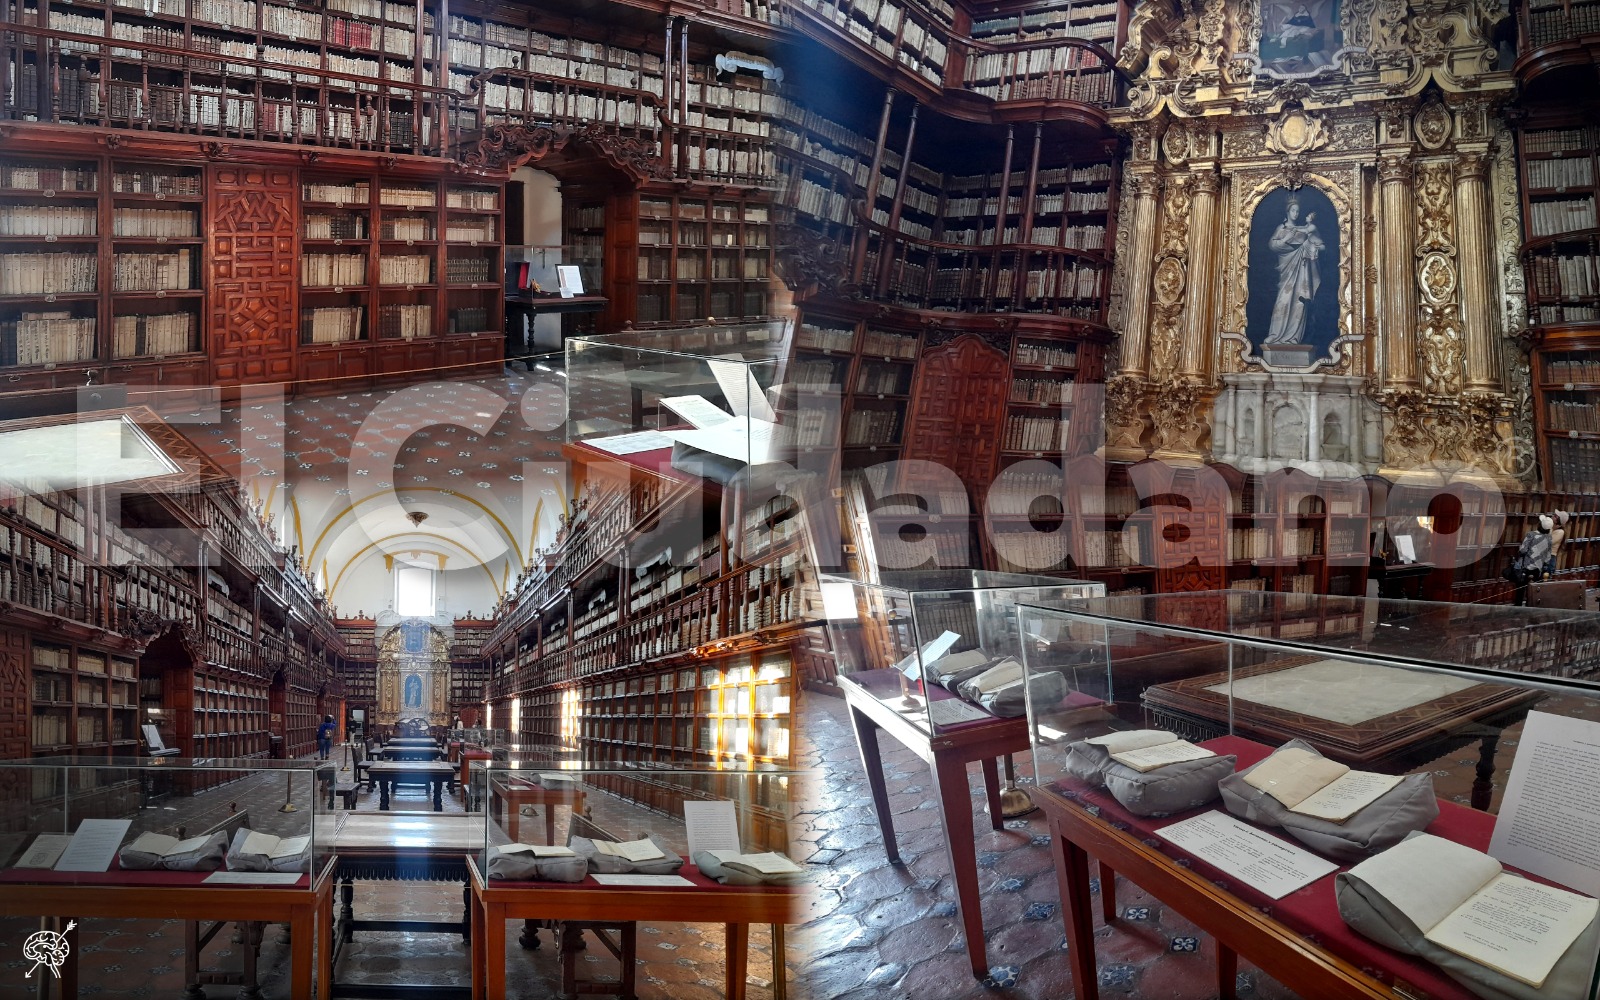 Biblioteca Palafoxiana, 337 años de historia y acervo universal